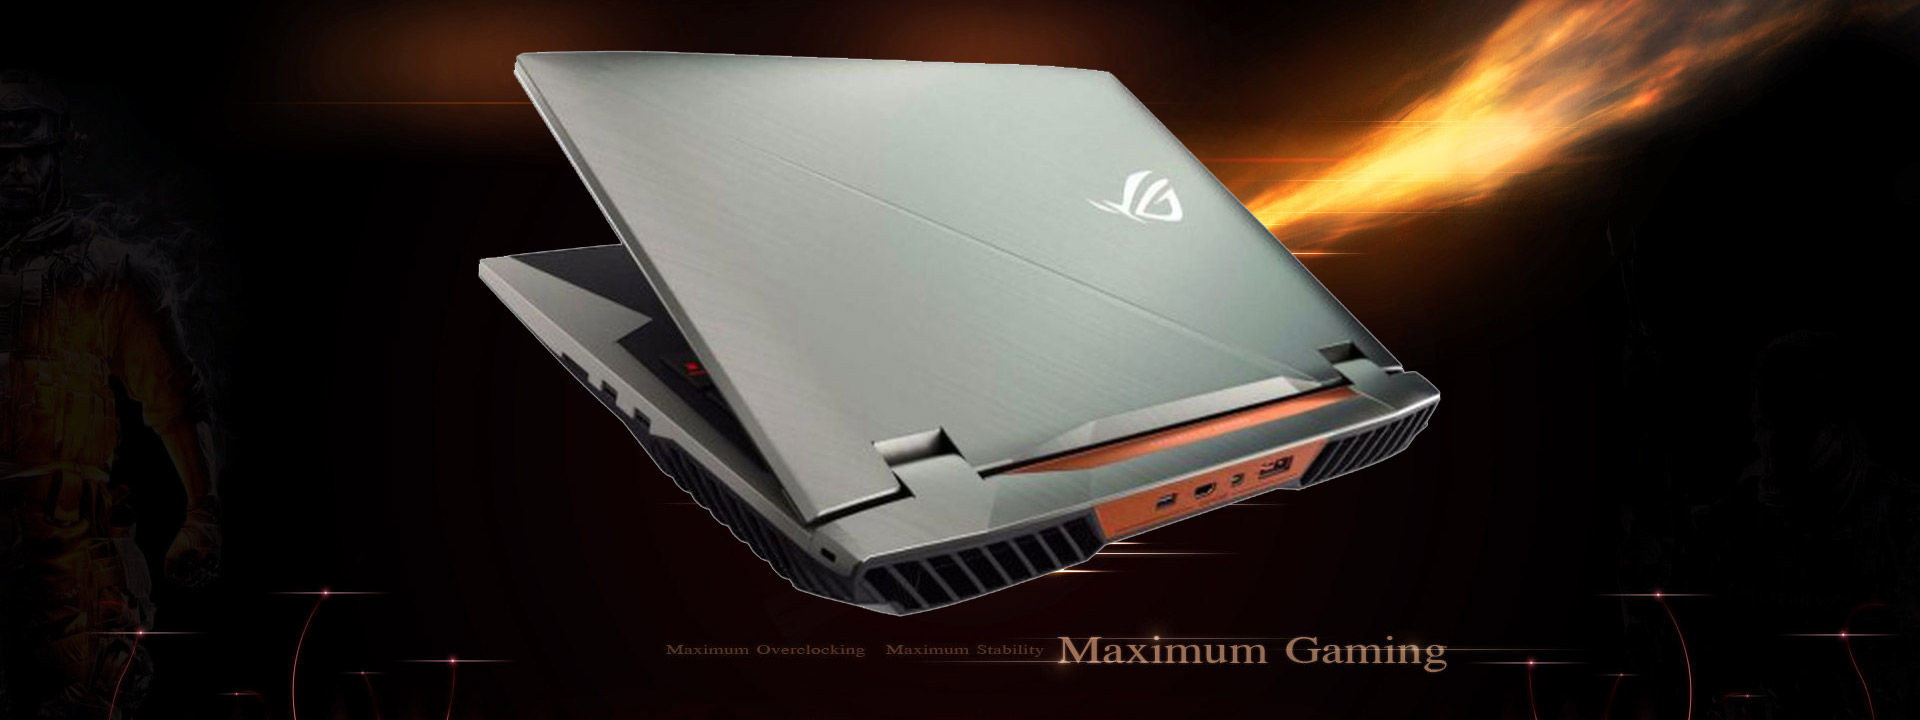 [IFA 2017] Asus Chimera: laptop chơi game với màn hình 144Hz, GPU GTX 1080